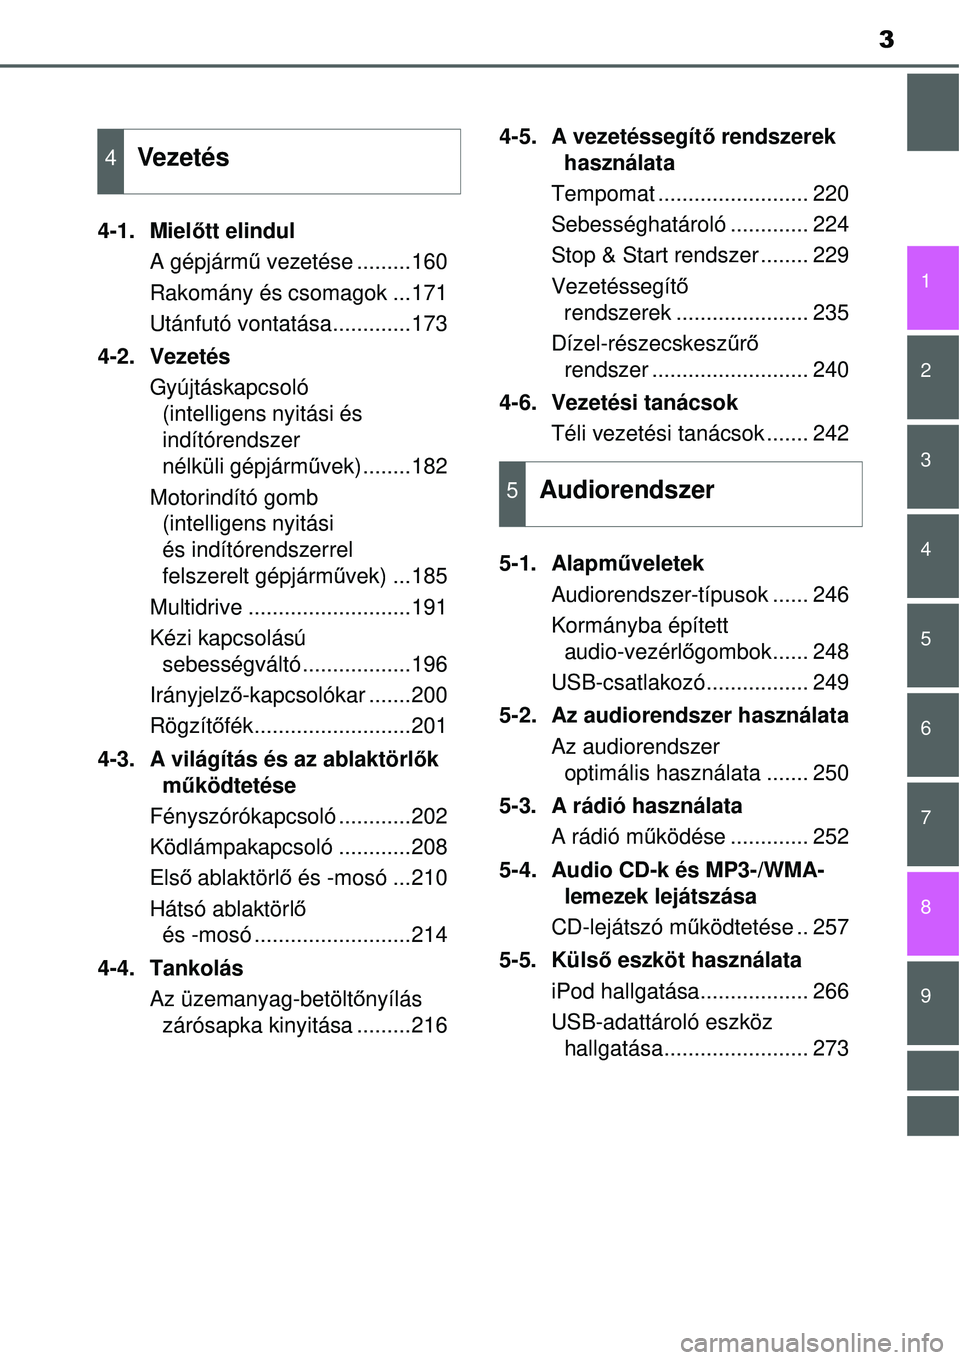 TOYOTA YARIS 2015  Kezelési útmutató (in Hungarian) 3
1
7
8 6 5
4
3
2
9
4-1. Mielőtt elindul
A gépjármű vezetése .........160
Rakomány és csomagok ...171
Utánfutó vontatása.............173
4-2. Vezetés
Gyújtáskapcsoló 
(intelligens nyitá